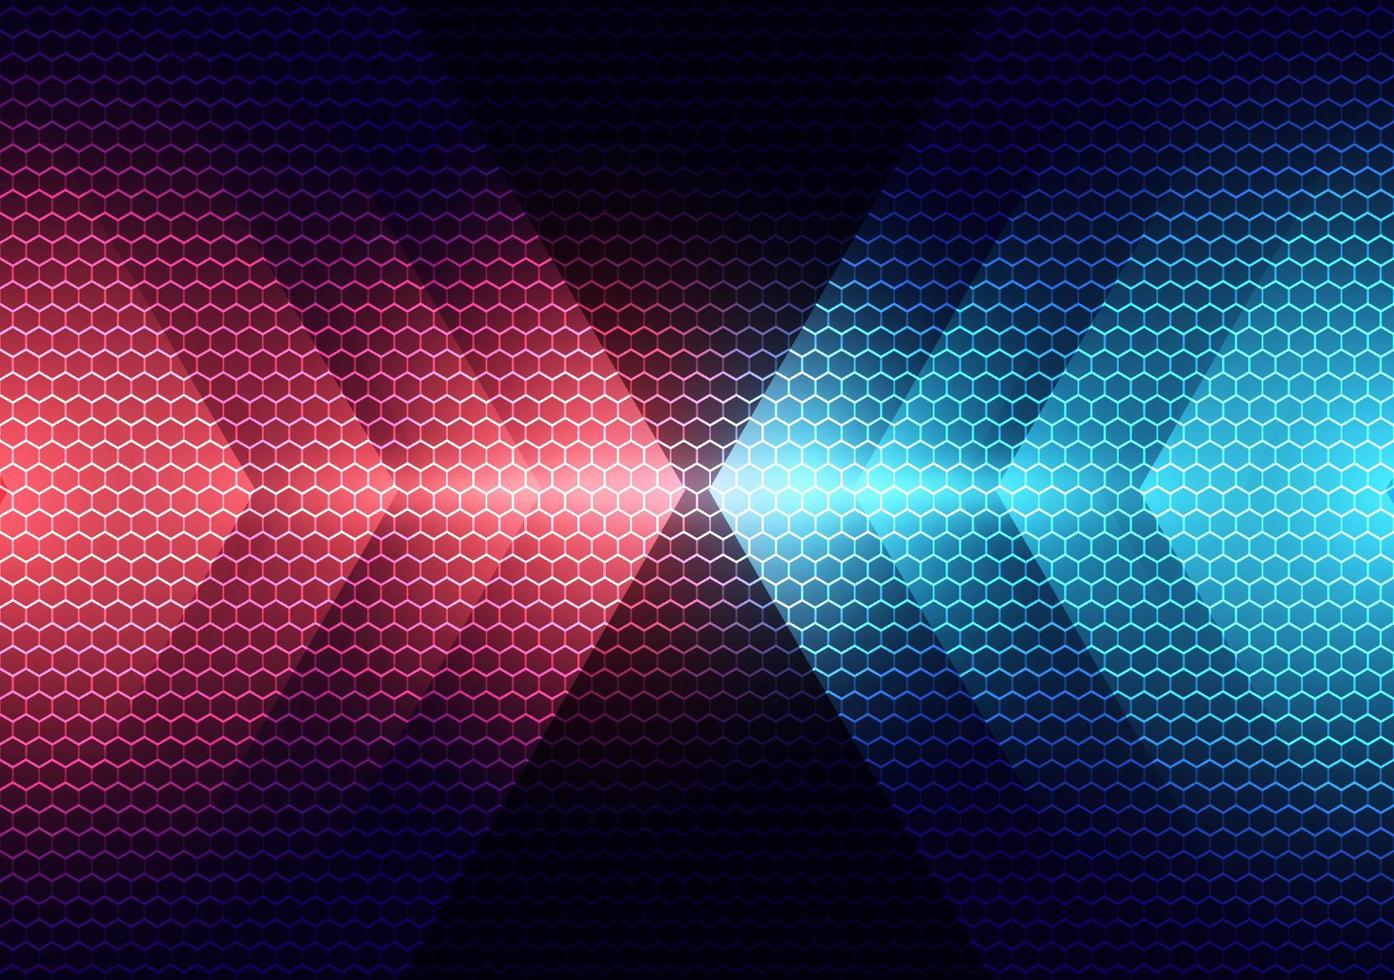 tecnologia abstrata conceito futurista setas de luz vermelha e azul no fundo do padrão de hexágonos vetor